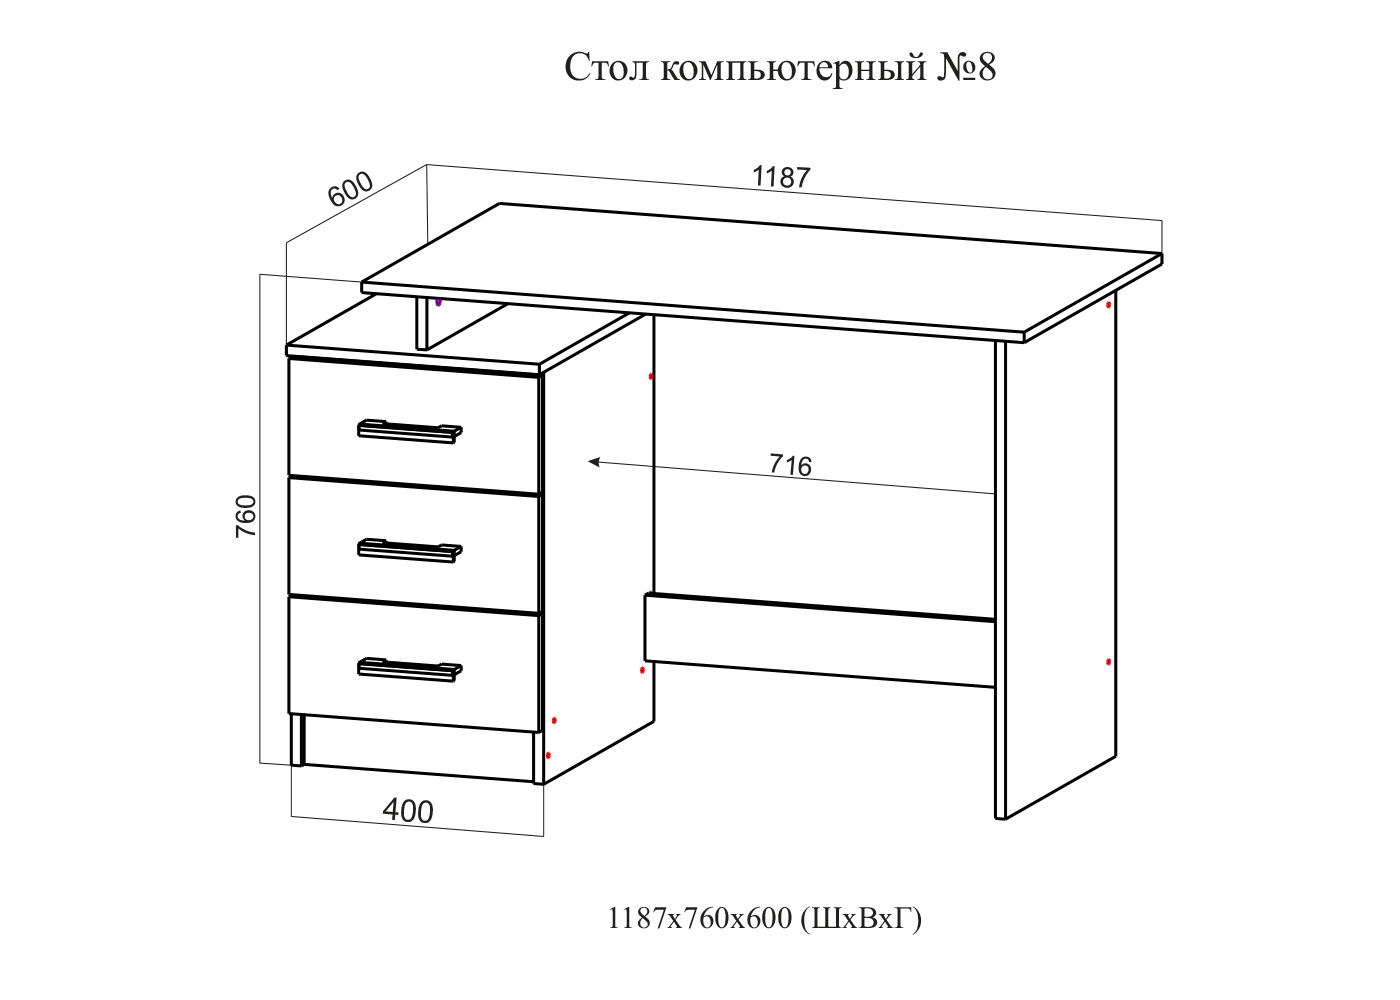 Оптимальные размеры компьютерного стола